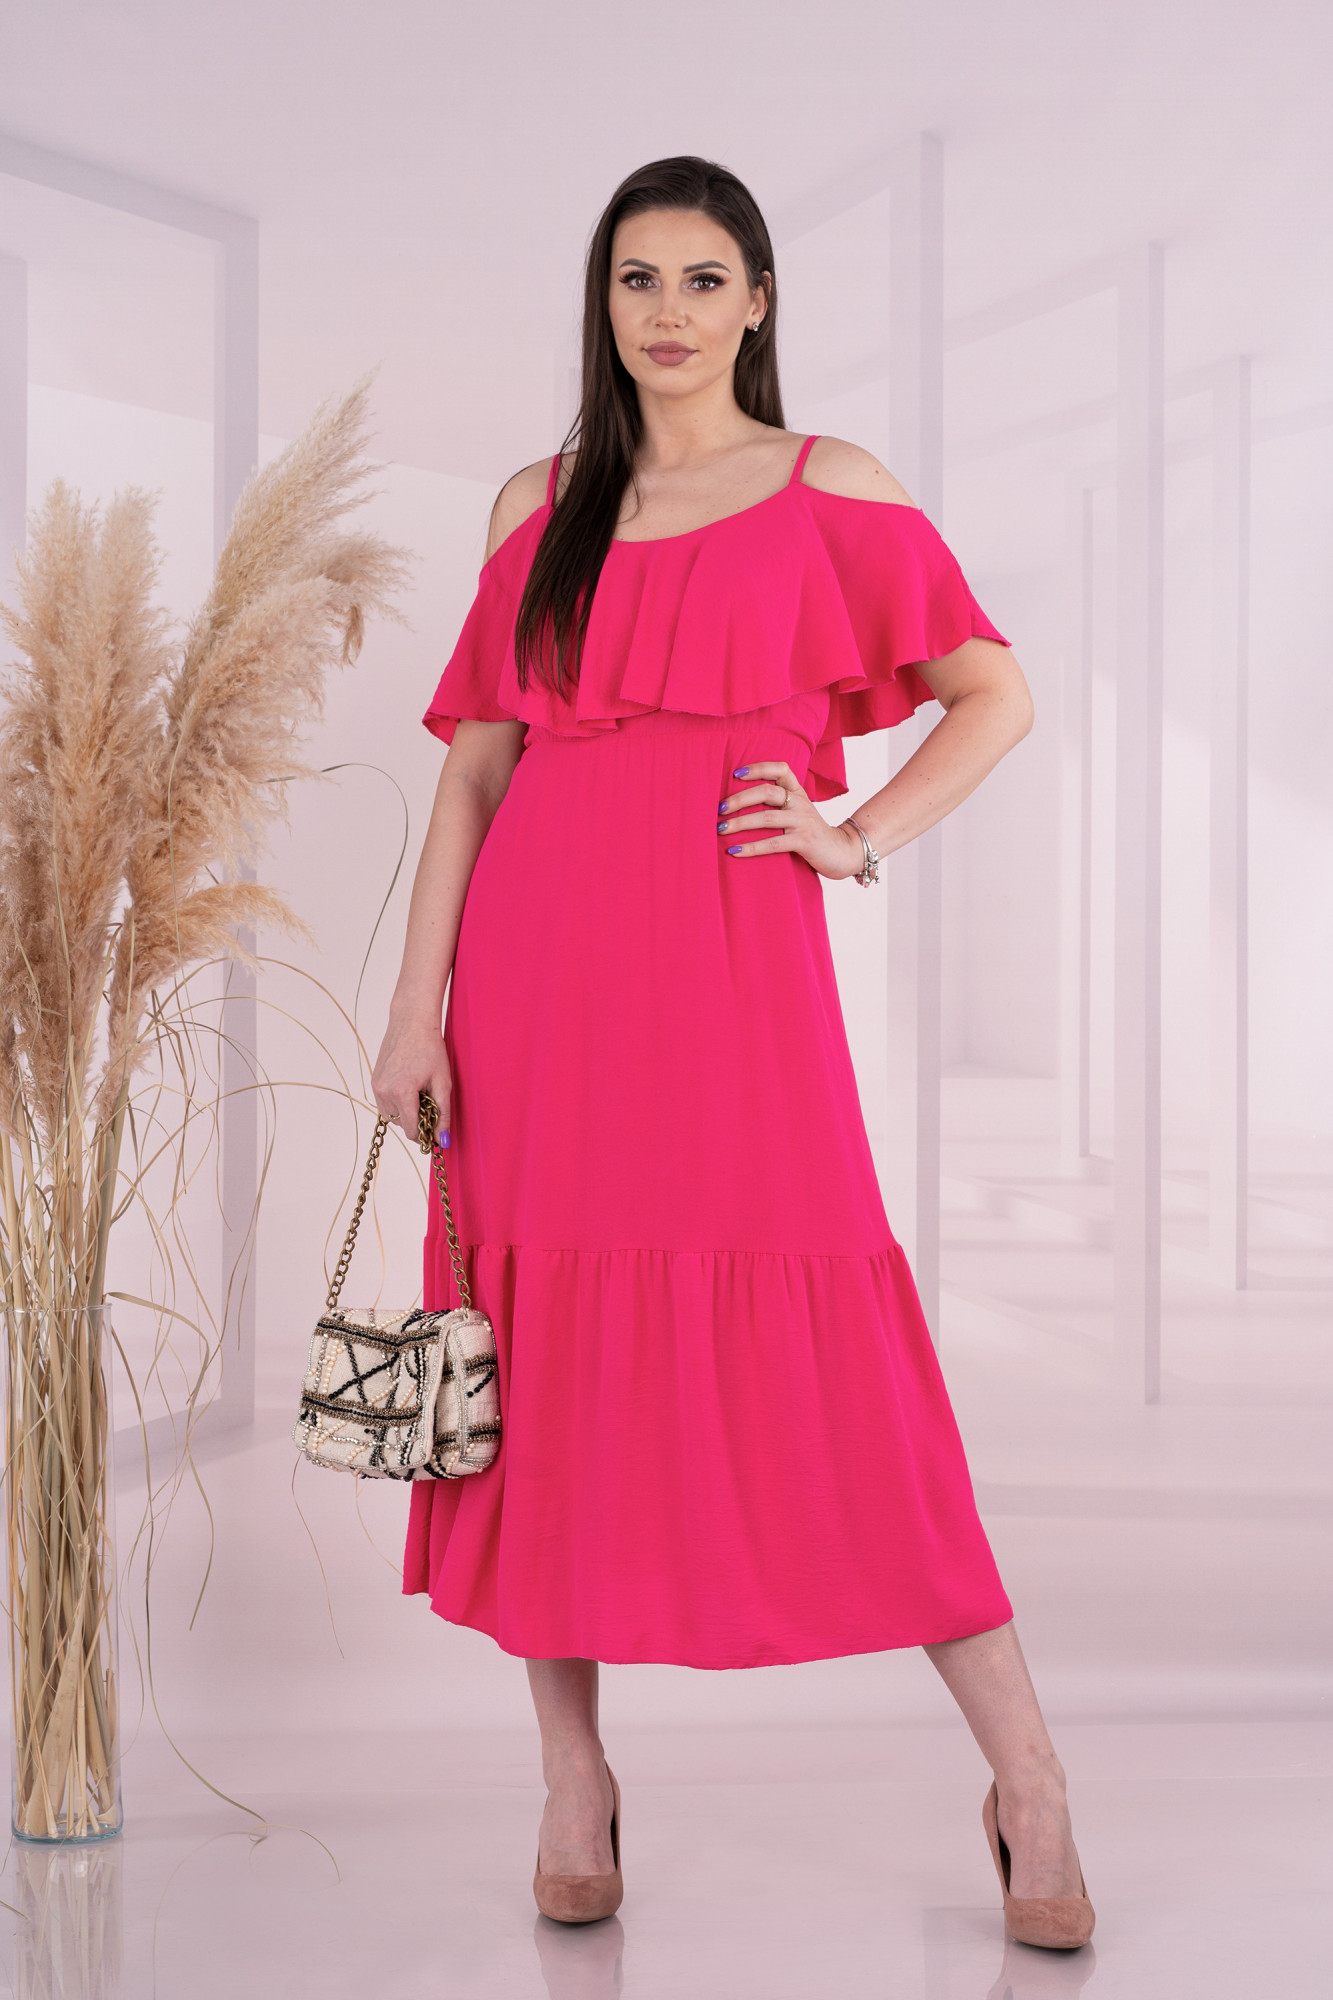 Sunlov Růžové šaty - Merribel jedna velikost